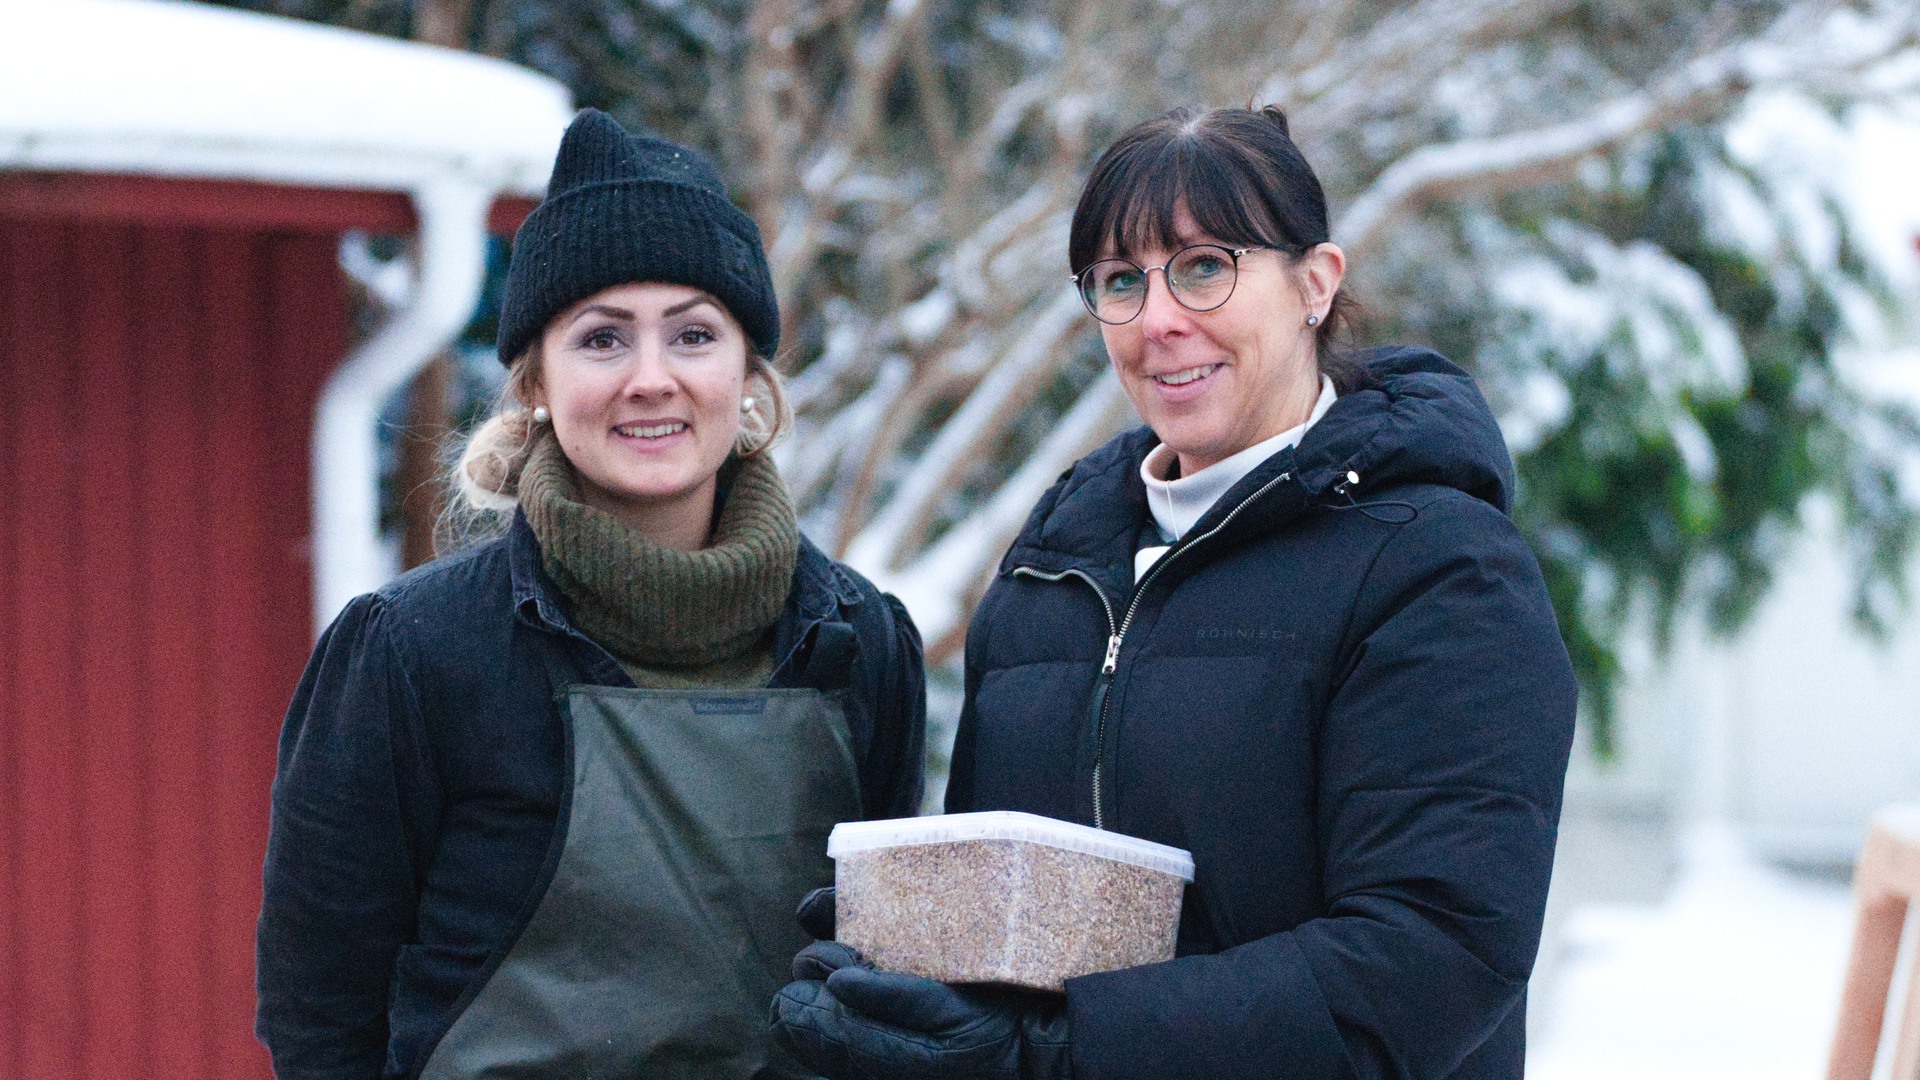 Annika från Hjo bryggeri och Anna från måltidsenheten pratar med varandra ute i snön. Anna håller i en plastburk med drav.